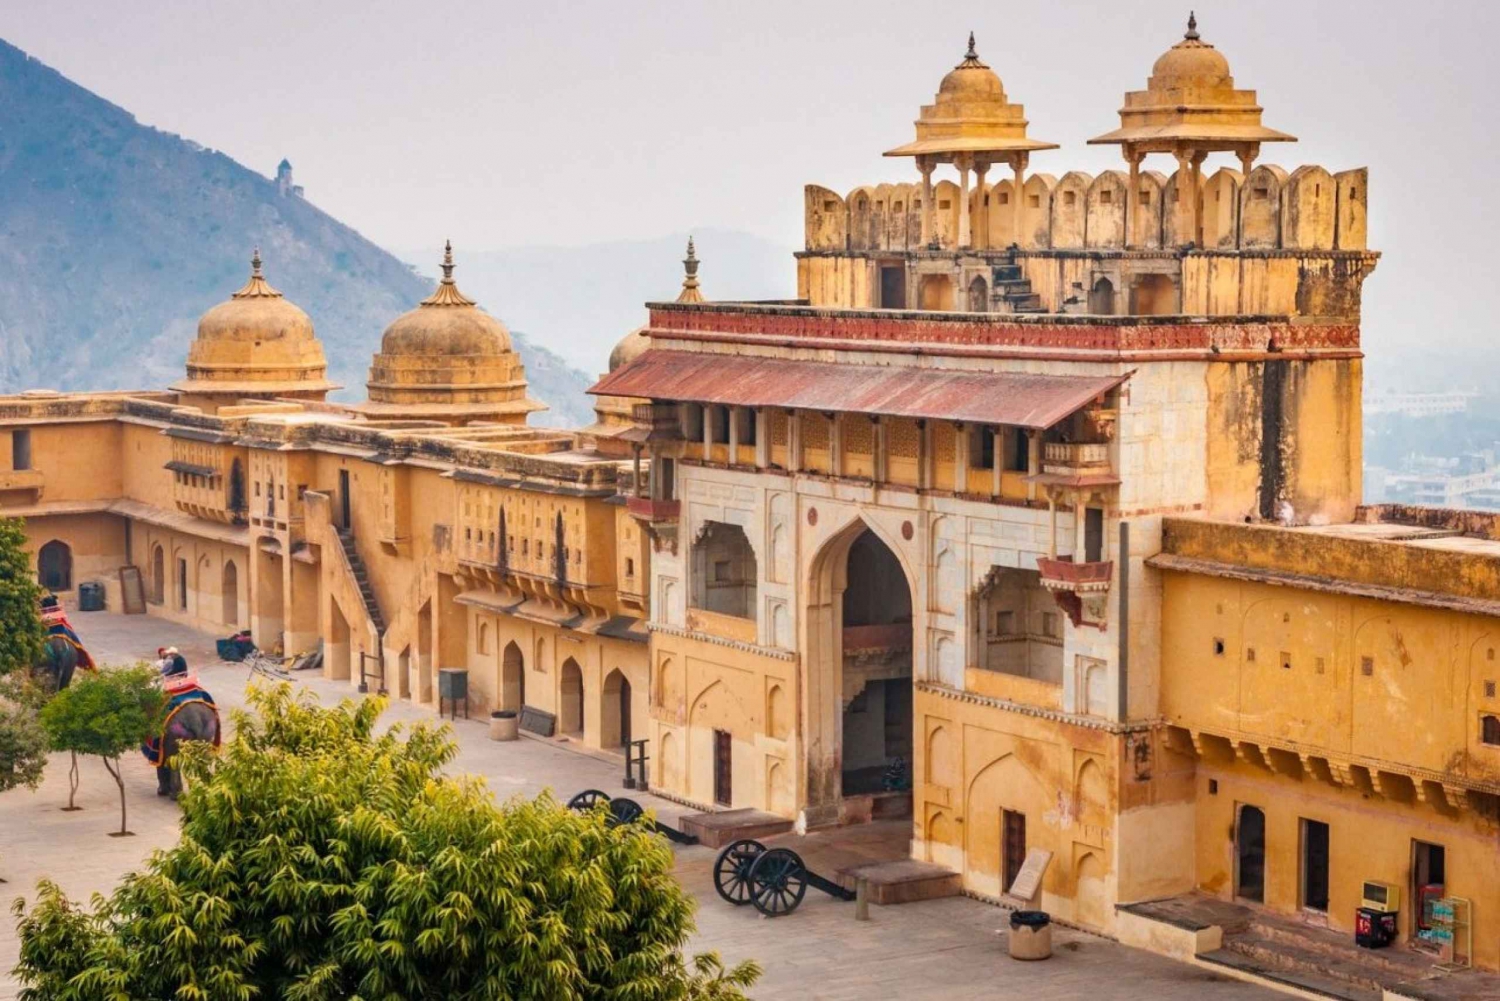 Excursão de luxo de 4 dias ao Triângulo Dourado: Agra e Jaipur saindo de Delhi